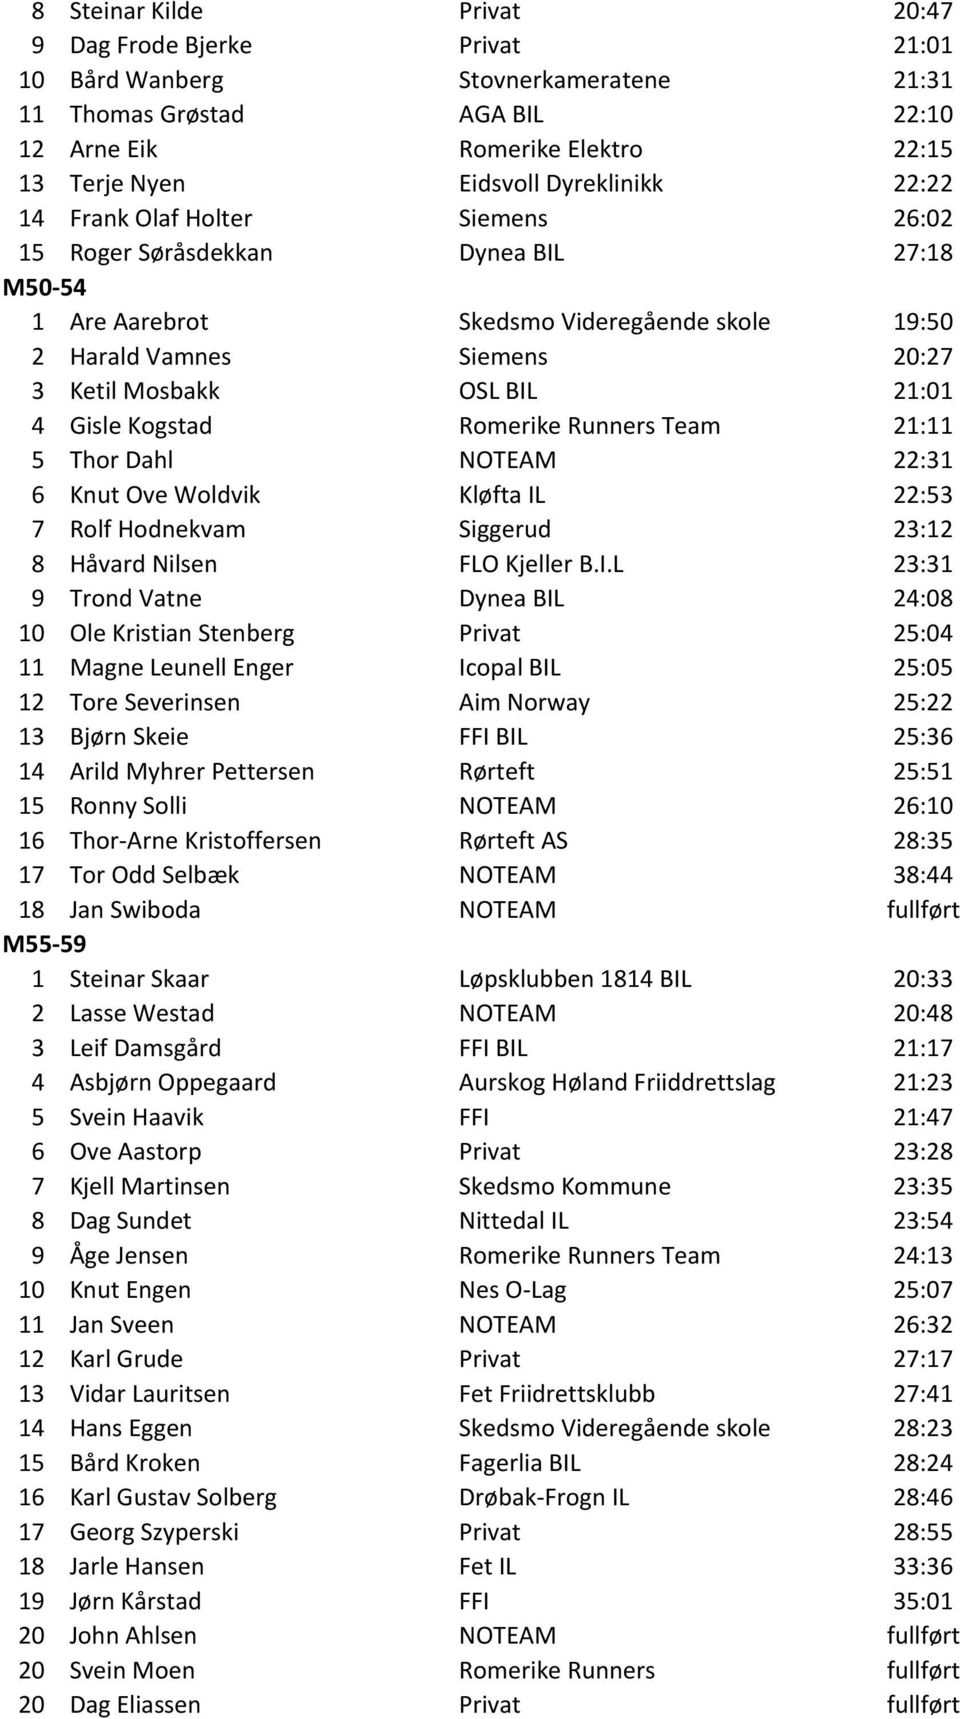 21:01 4 Gisle Kogstad Romerike Runners Team 21:11 5 Thor Dahl NOTEAM 22:31 6 Knut Ove Woldvik Kløfta IL